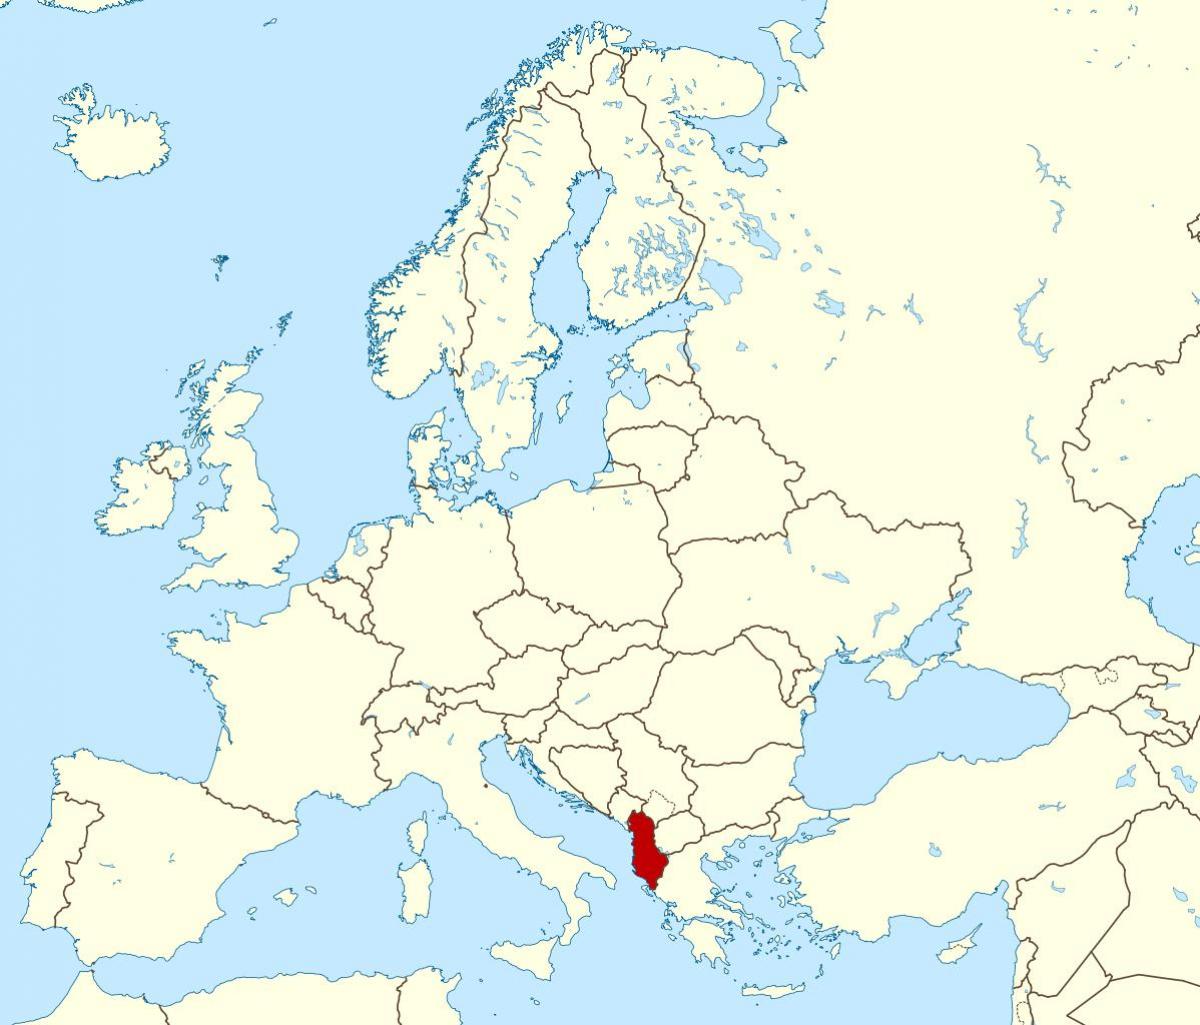 mapa mostrando a Albânia